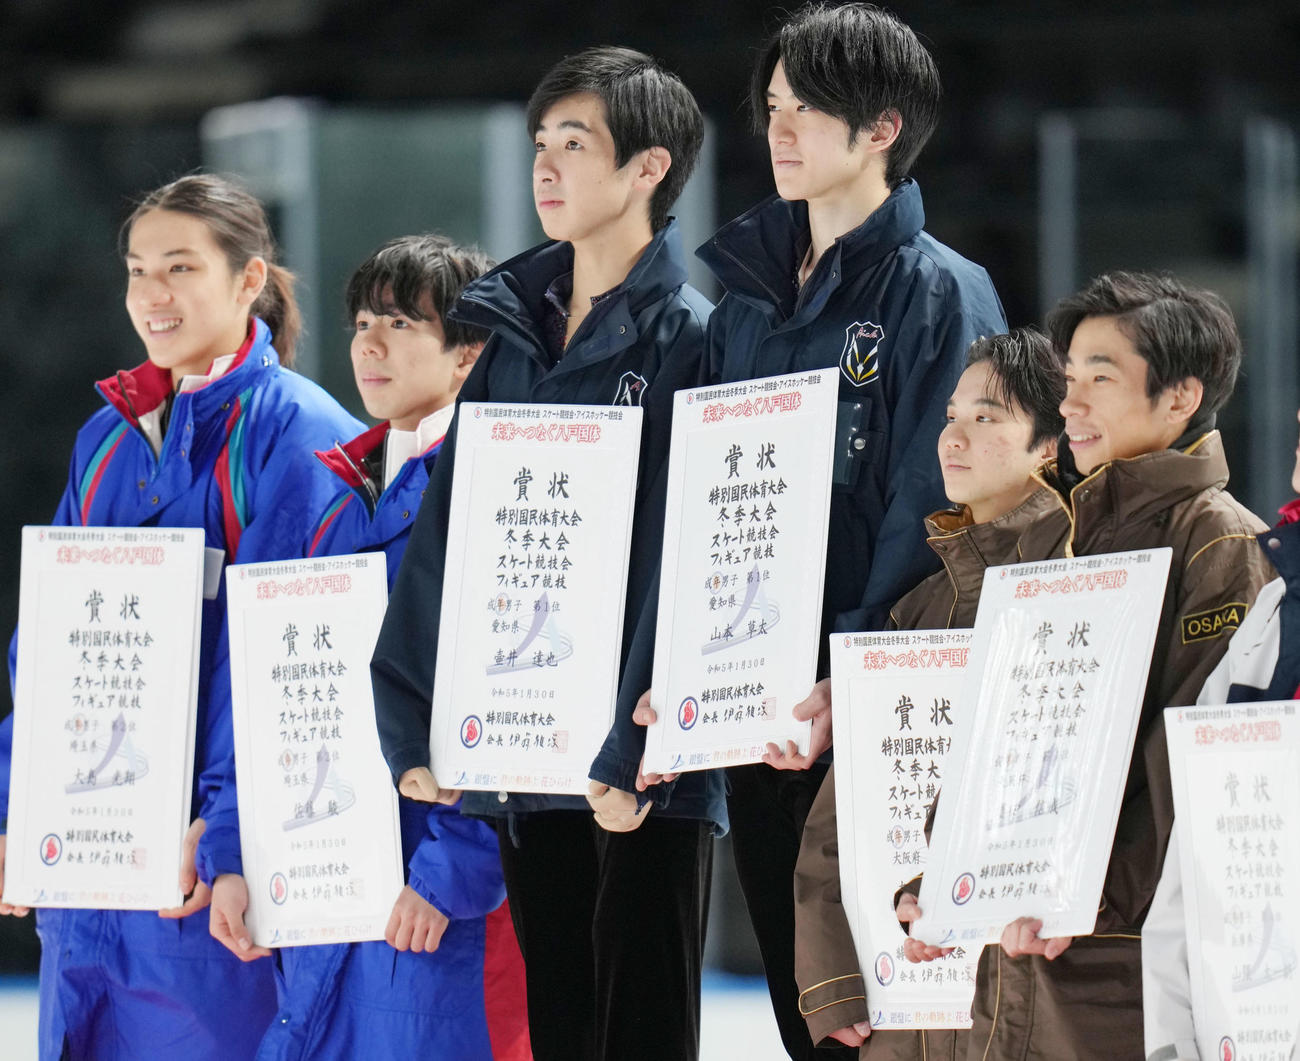 成年男子フィギュアスケートの表彰式で賞状を持つ、1位愛知の壷井（中央左）と山本（同右）。左から2位埼玉の大島、佐藤駿、2人おいて3位愛知の友野、織田